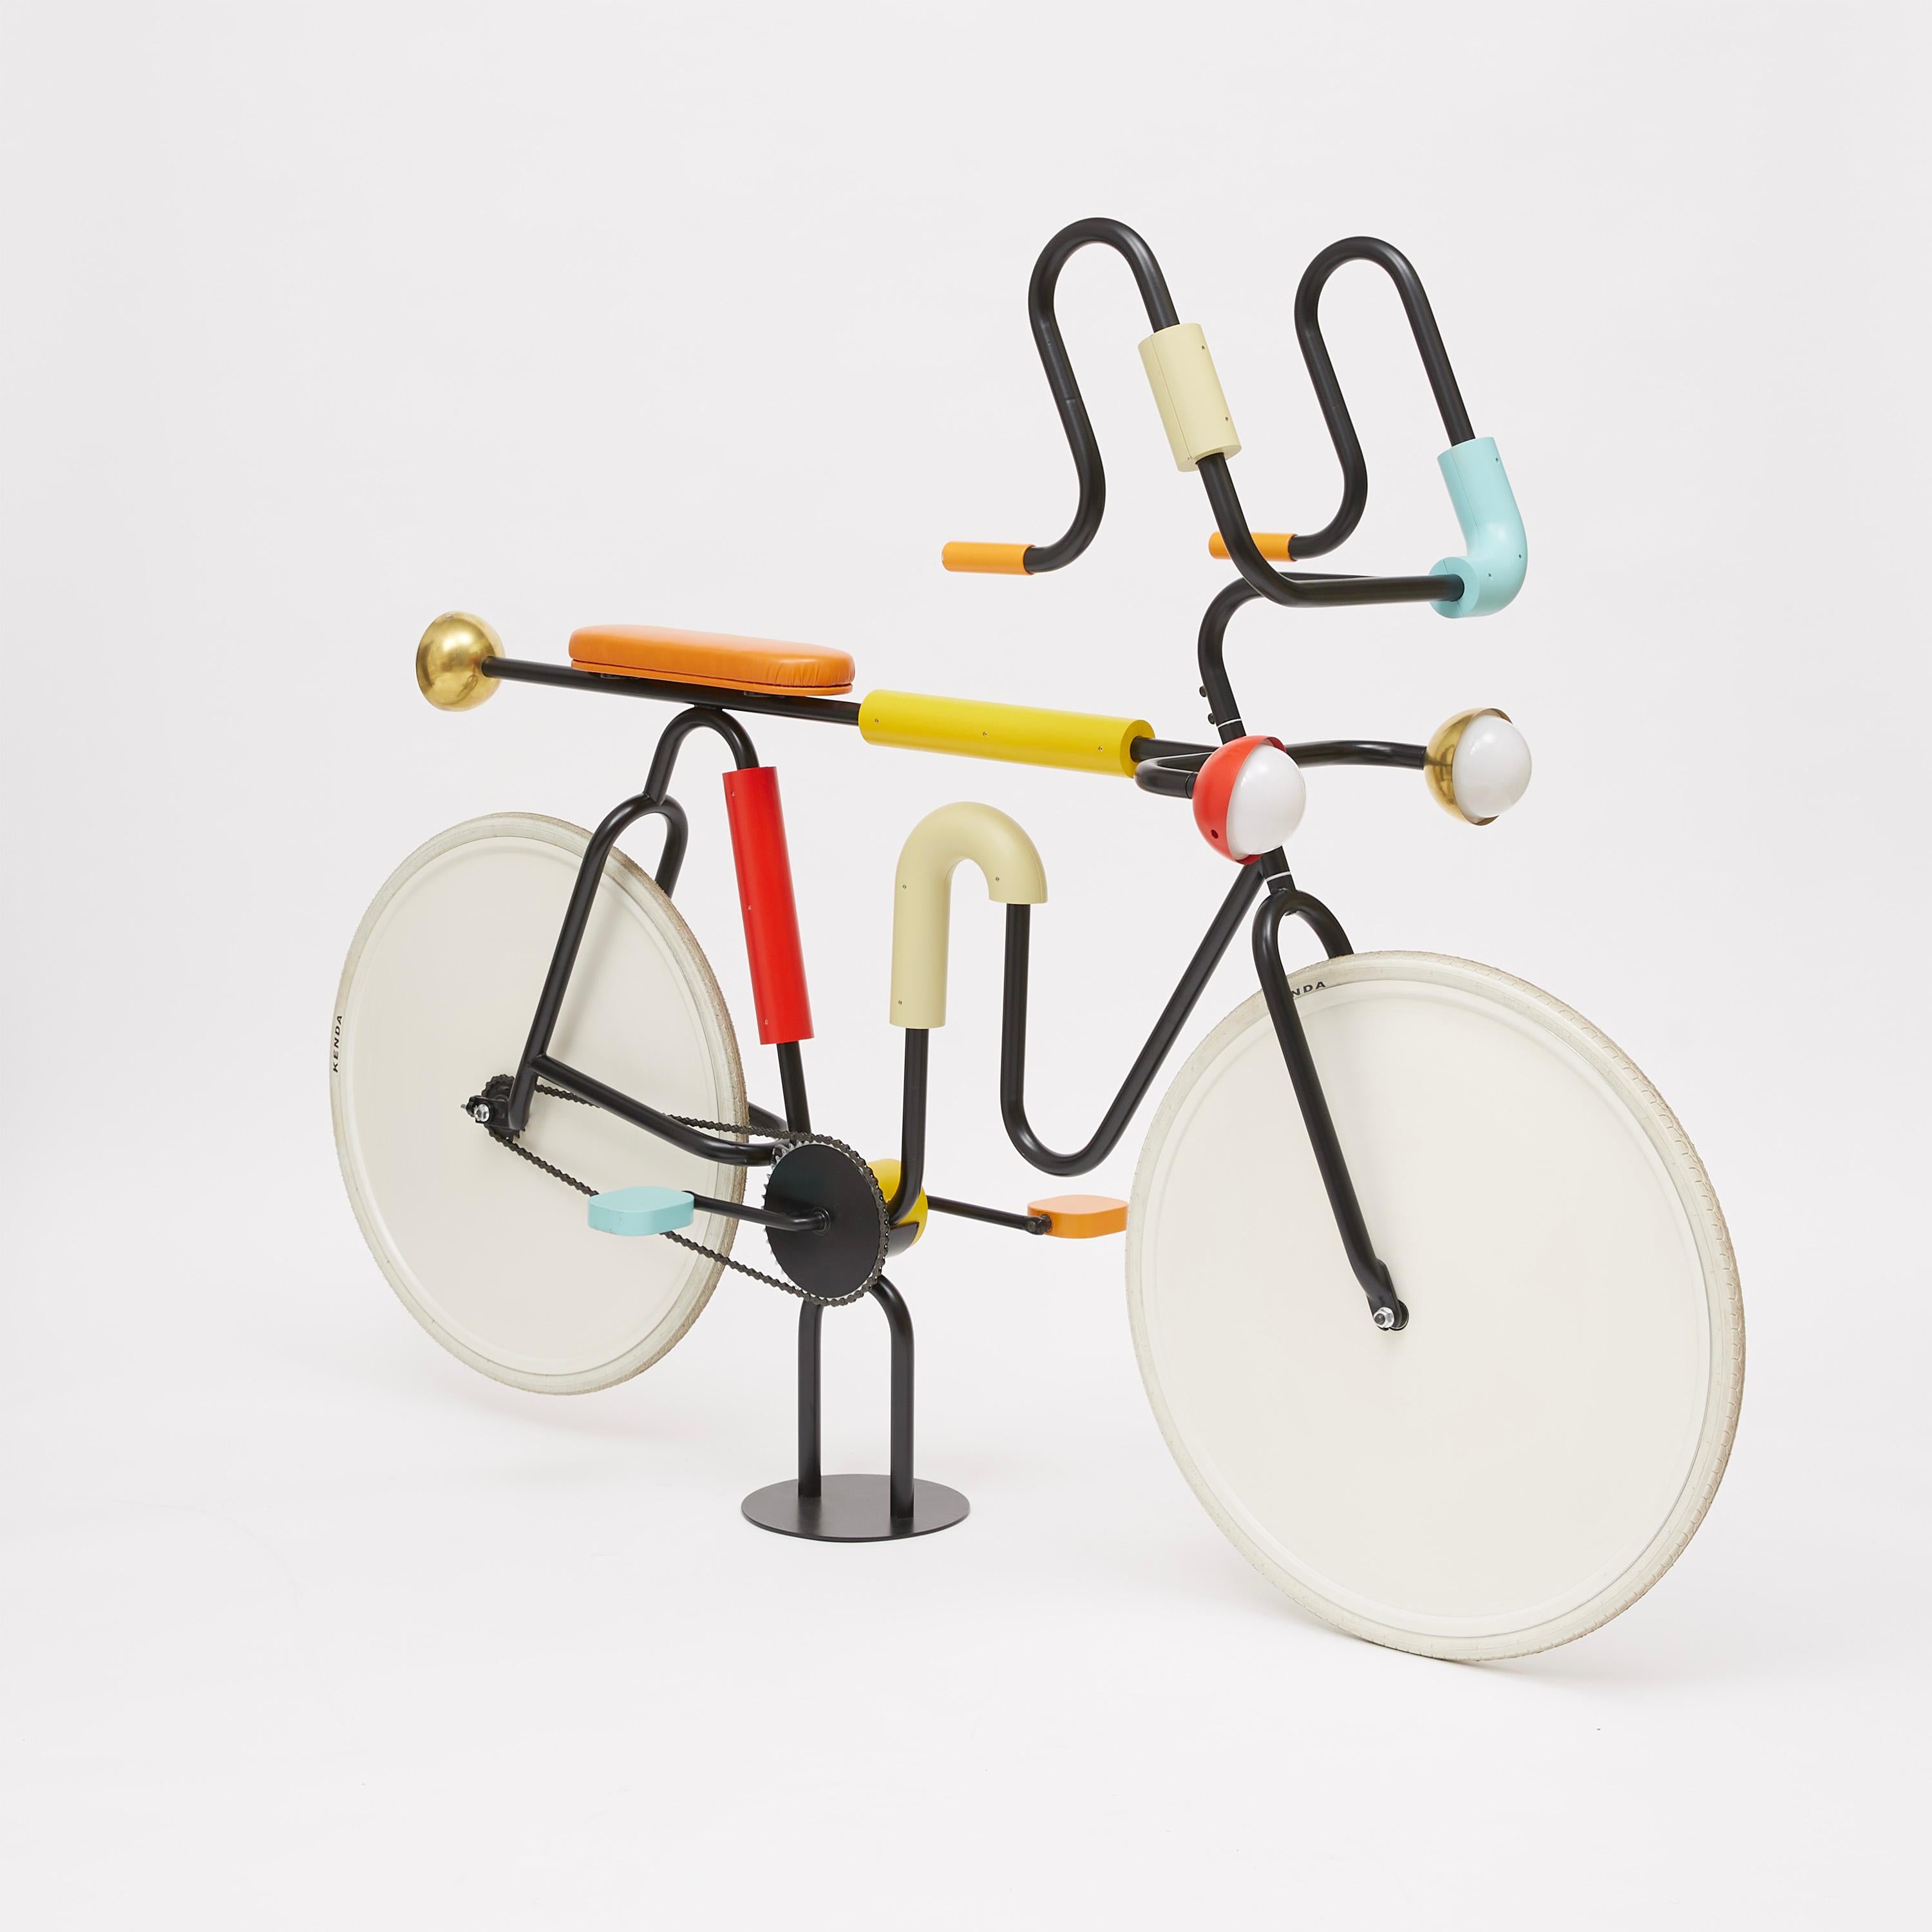 Ce design excentrique de la Collection S/One réinterprète la silhouette d'un vélo dans une version ludique et théâtralisée, riche en tubes colorés et en références géométriques. Superbe ajout à un intérieur contemporain où l'on souhaite concentrer